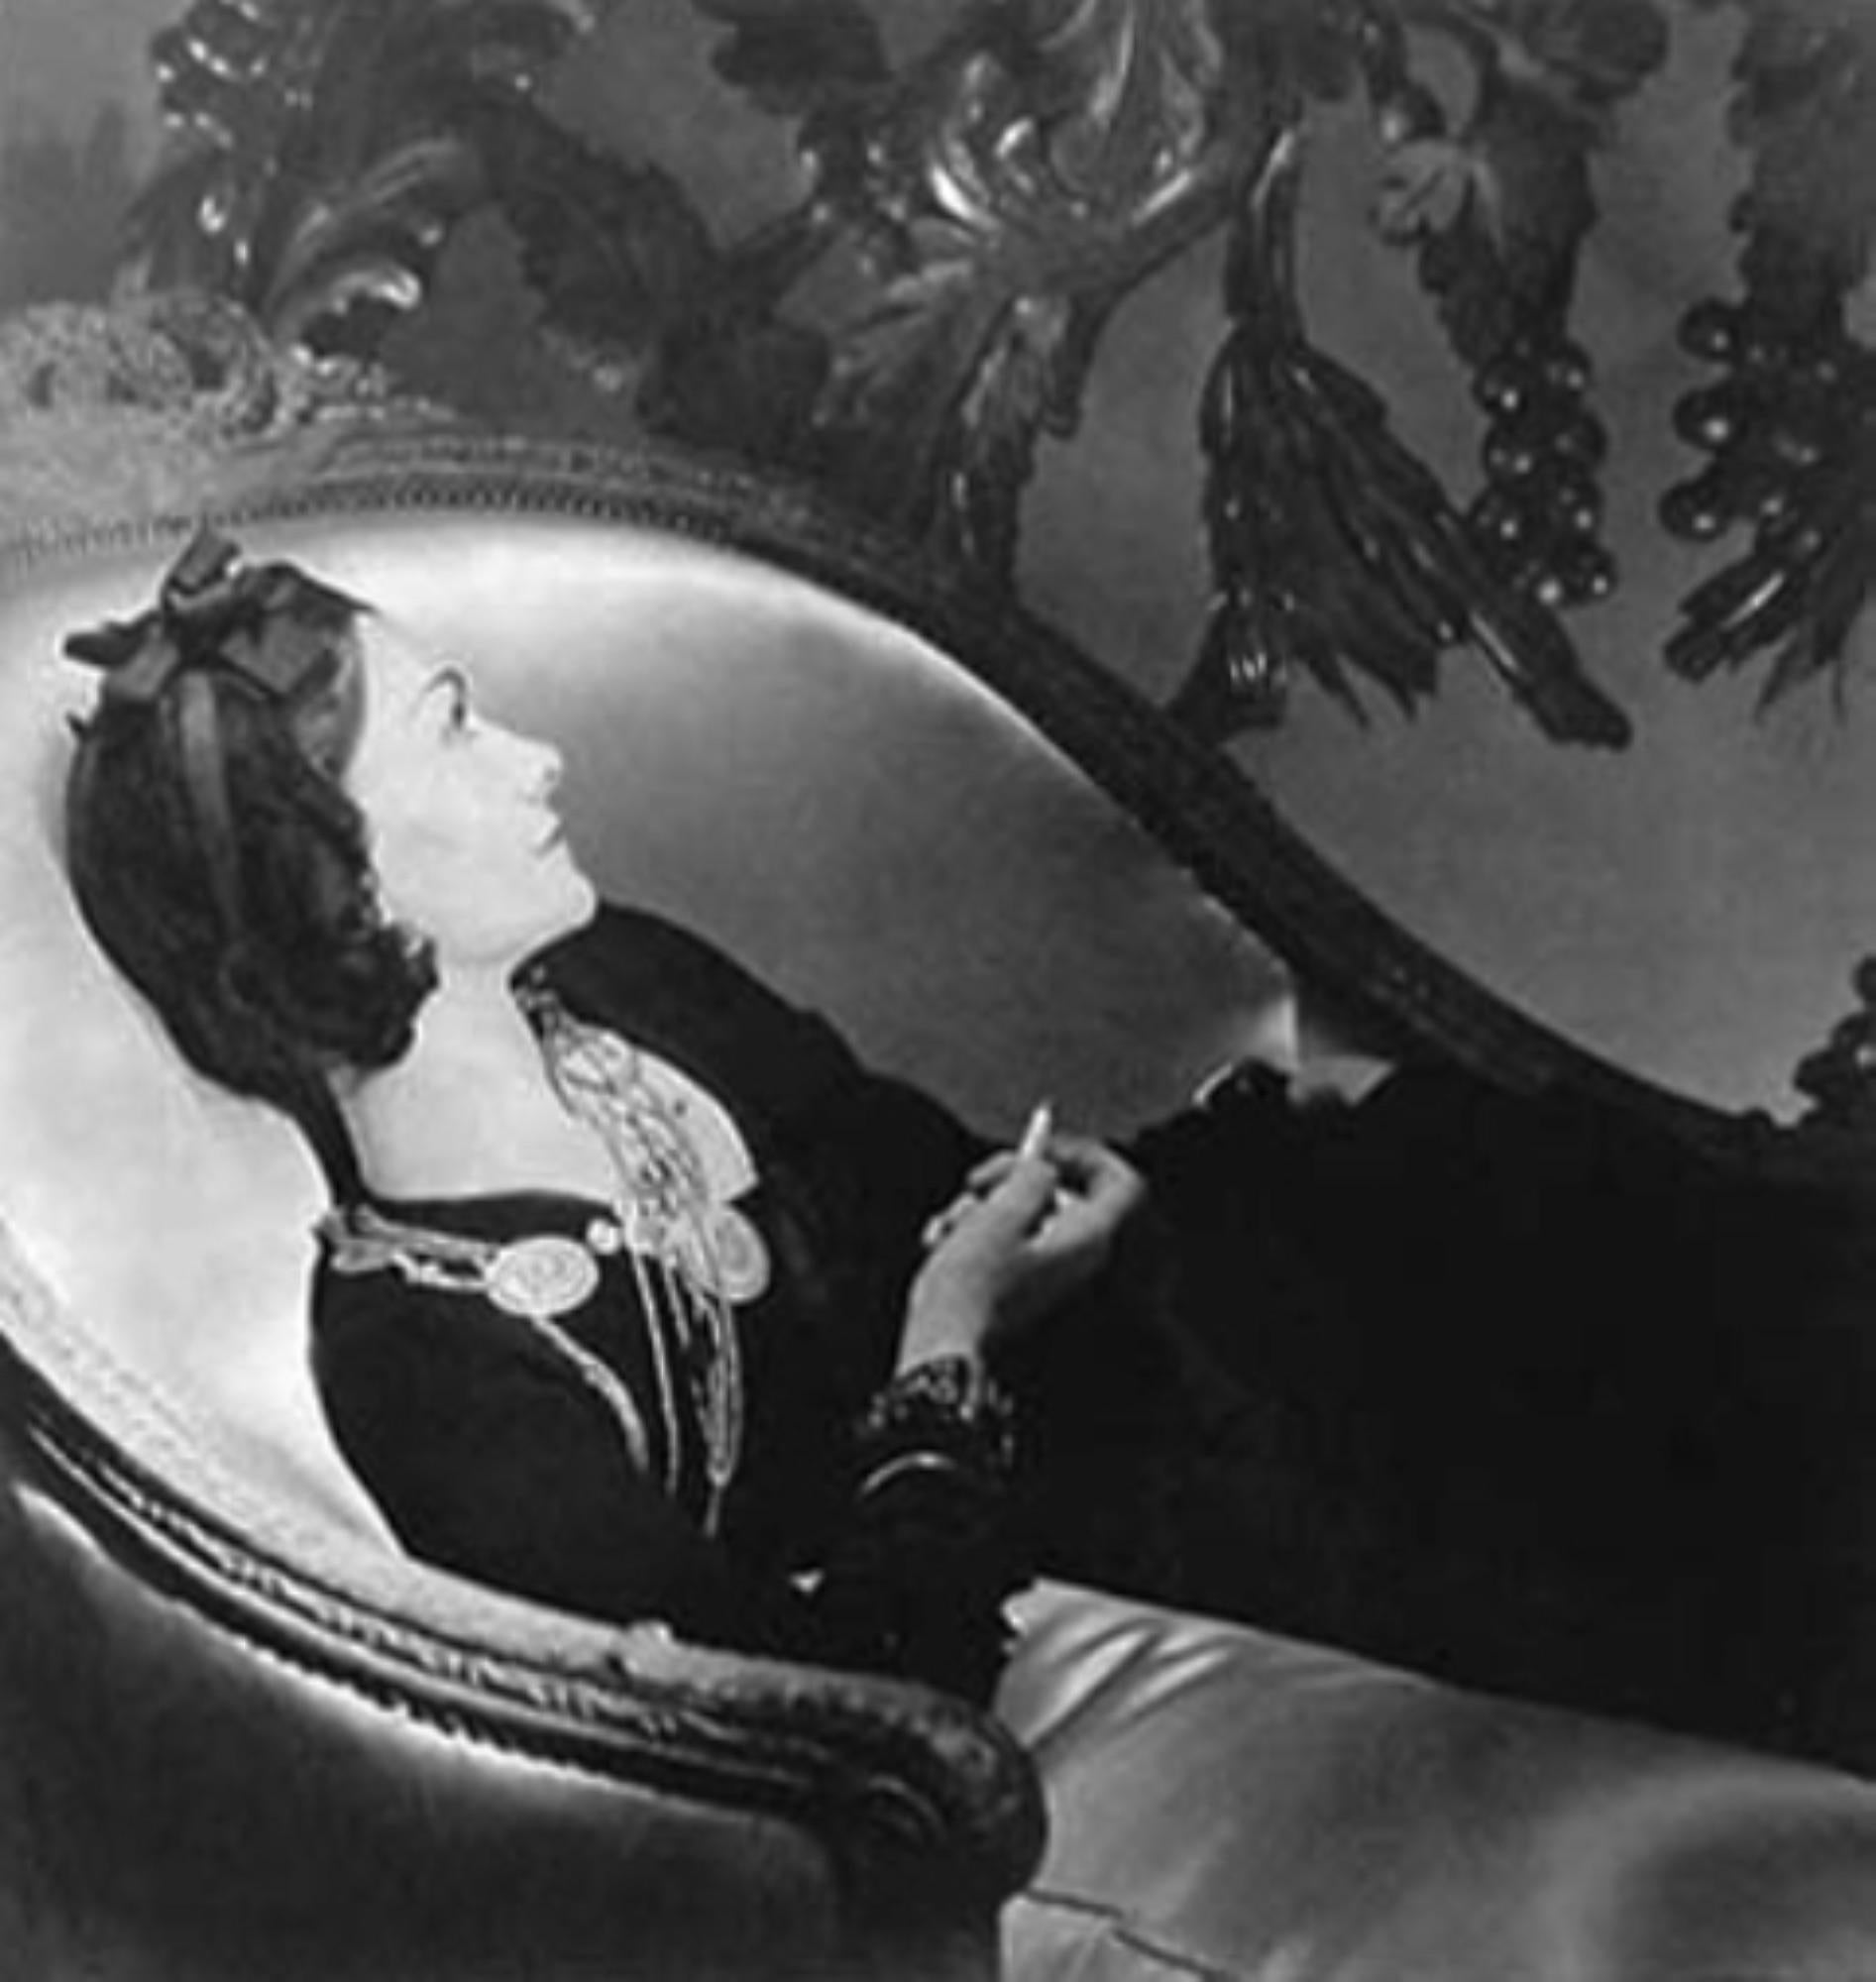 Künstler: ​Horst P. Horst (1906-1999)
Titel: Coco Chanel, Paris, 1937
Jahr: 1937
Medium: Silber-Gelatine-Druck
Größe: 14 x 11 Zoll
Zustand: Ausgezeichnet
Beschriftung: Verso mit Bleistift signiert, betitelt, datiert und mit Anmerkungen